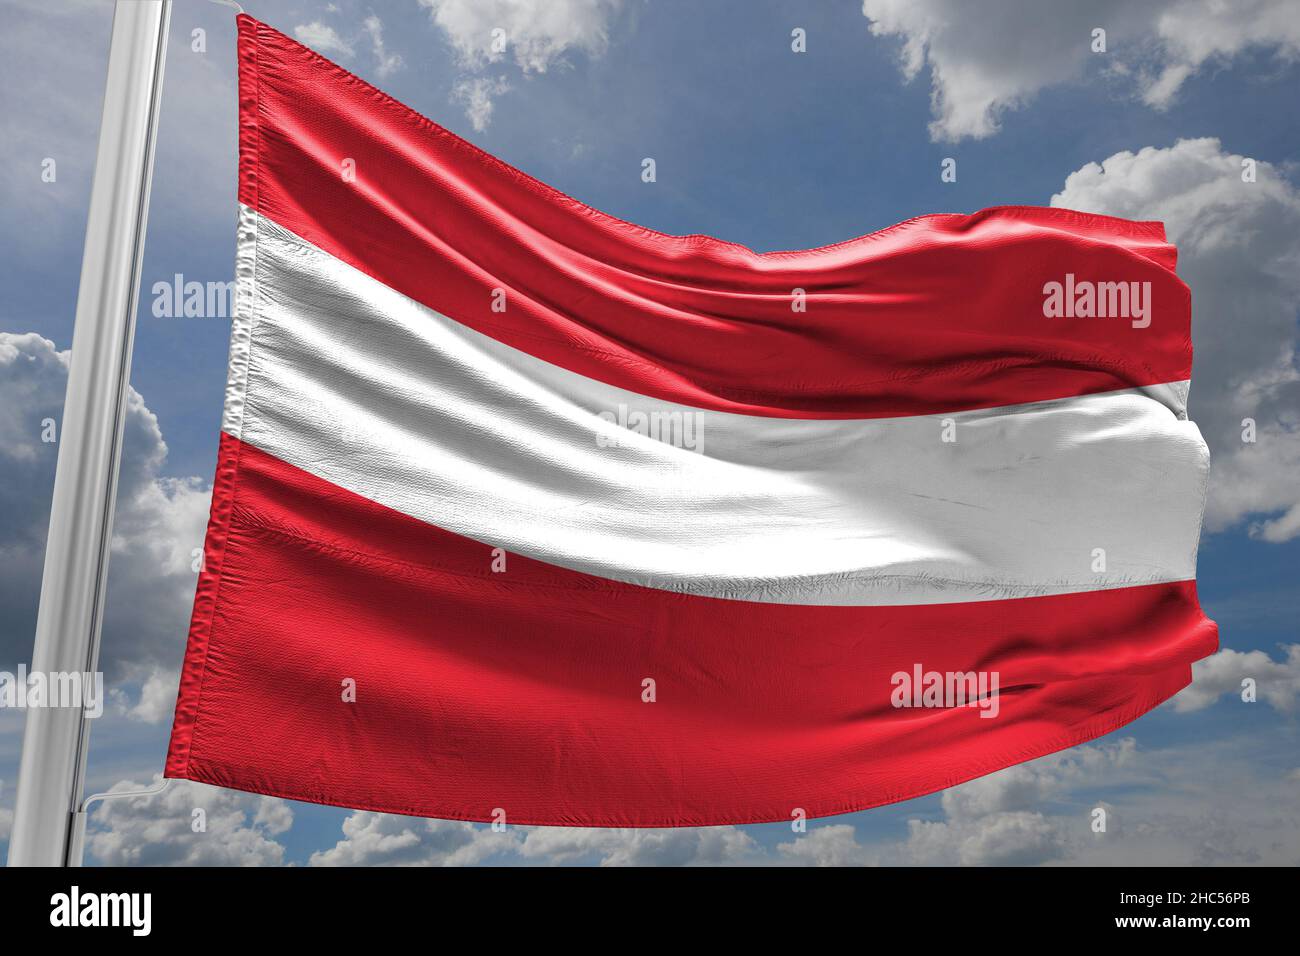 Flag of Austria, republic of austria Stock Photo